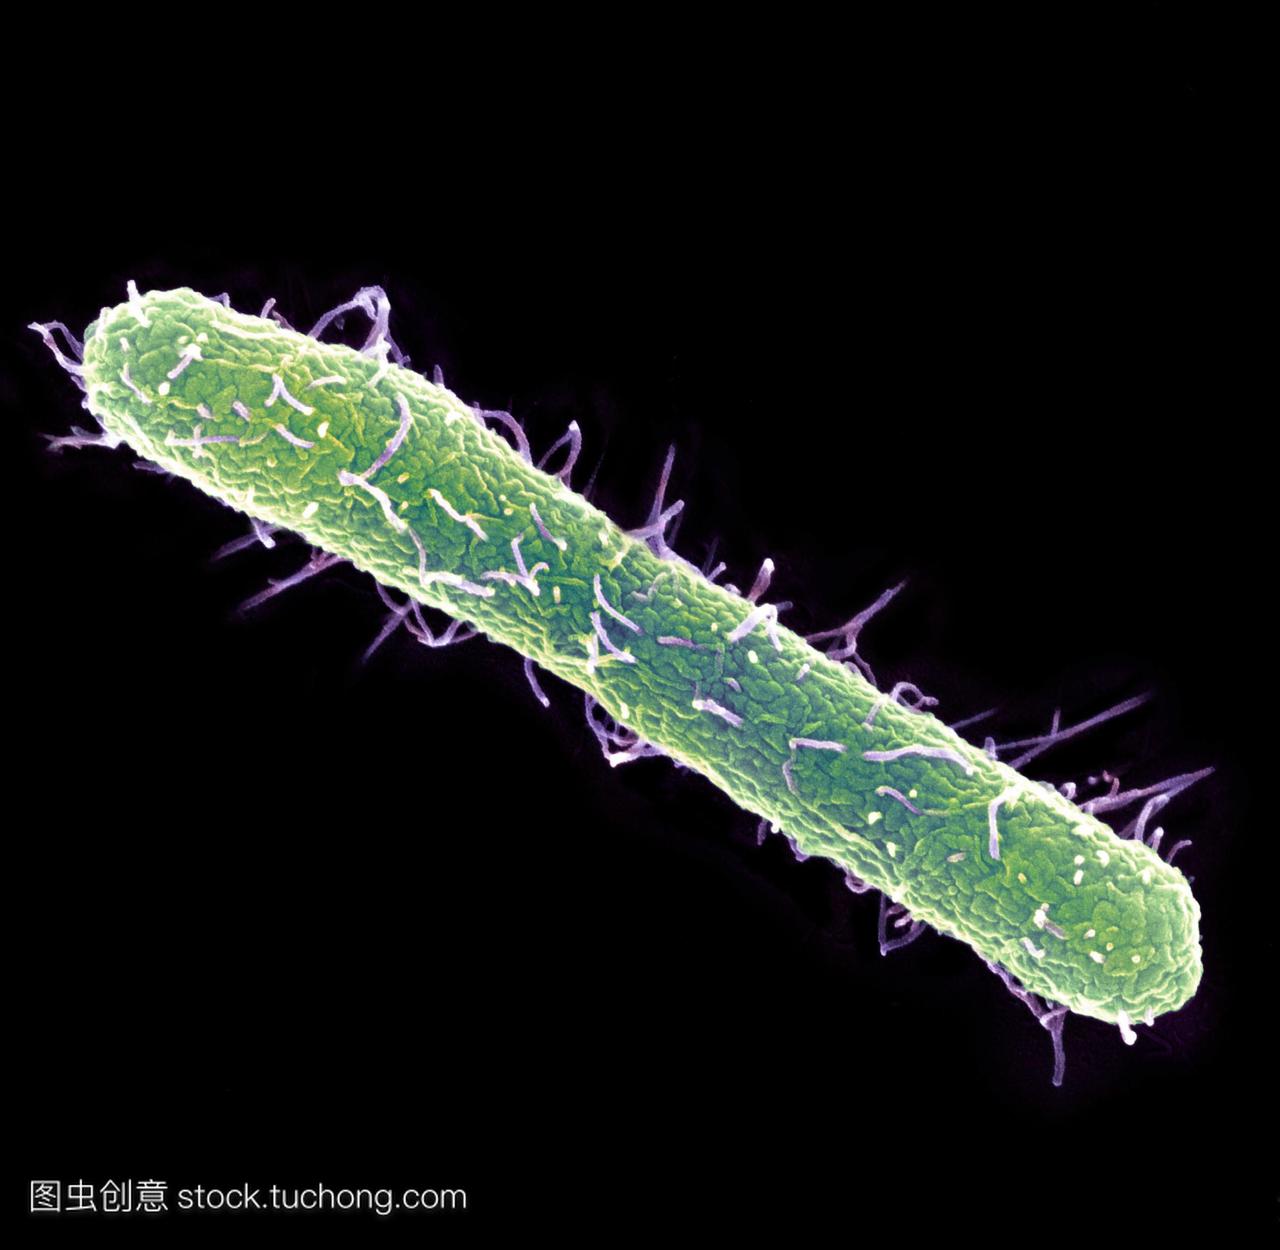 鼠伤寒沙门氏菌的细菌彩色扫描电子显微摄影S